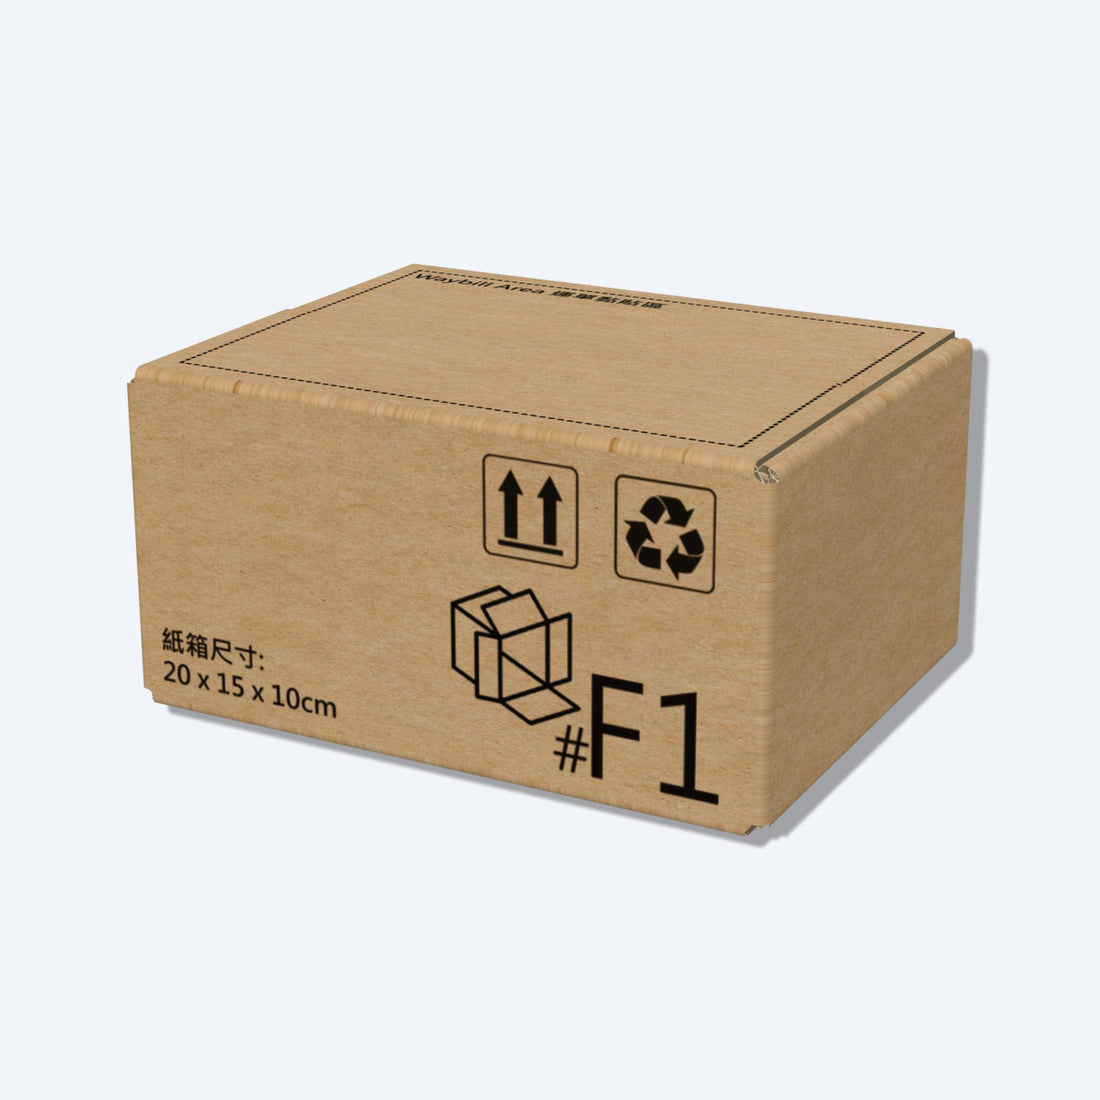 堅固的啡色順豐速運F1尺寸紙箱正面圖，這款快遞紙箱專為順豐速運設計。